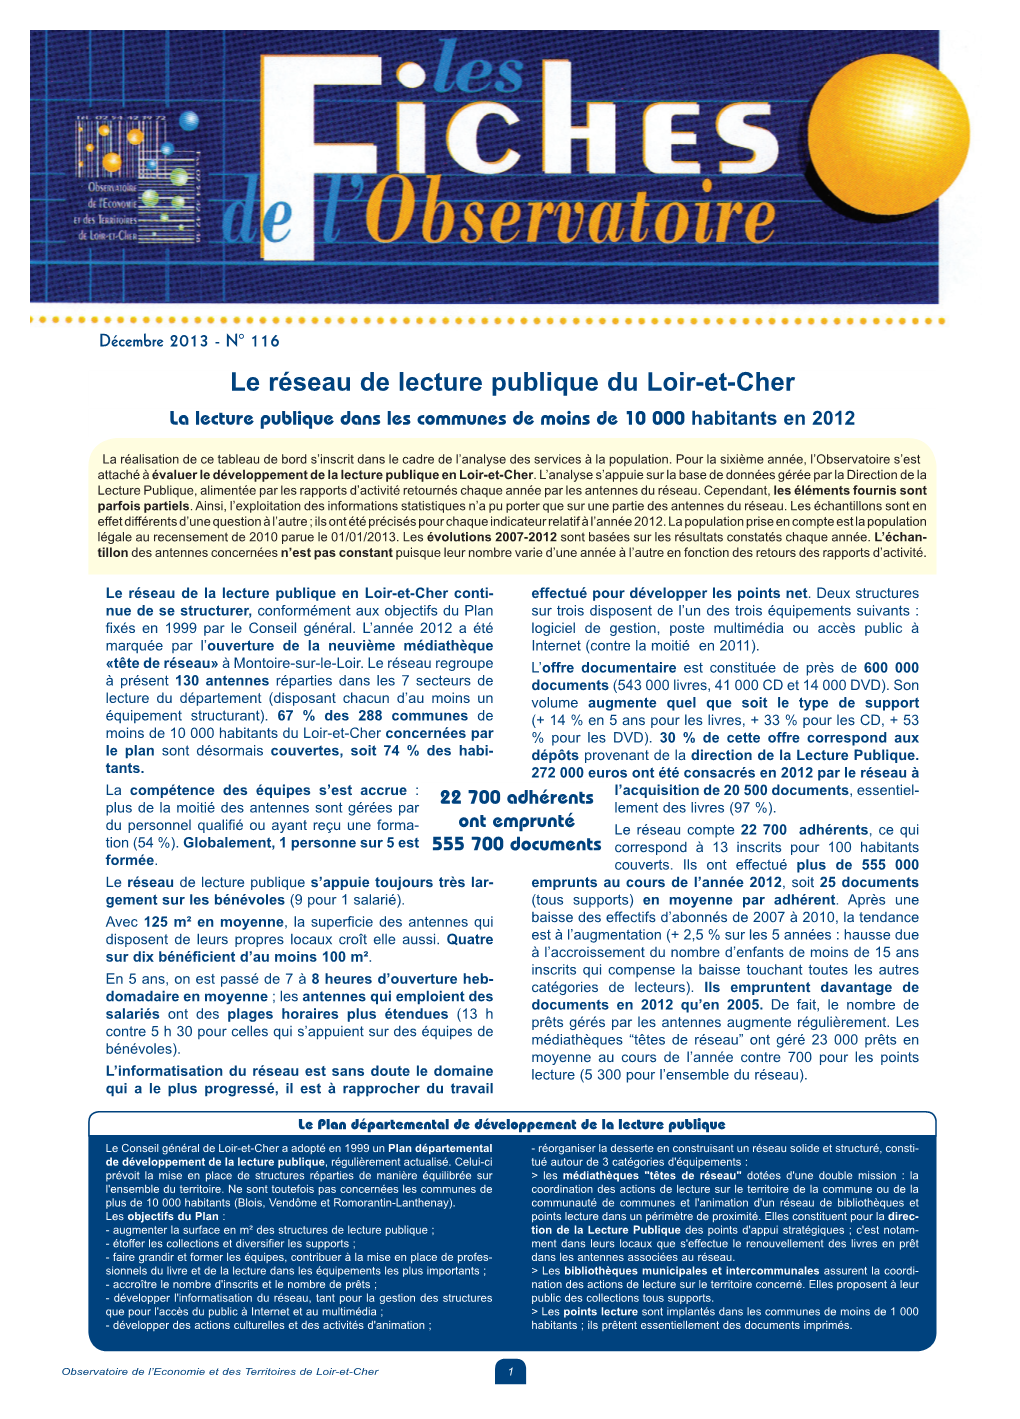 Le Réseau De Lecture Publique Du Loir-Et-Cher La Lecture Publique Dans Les Communes De Moins De 10 000 Habitants En 2012